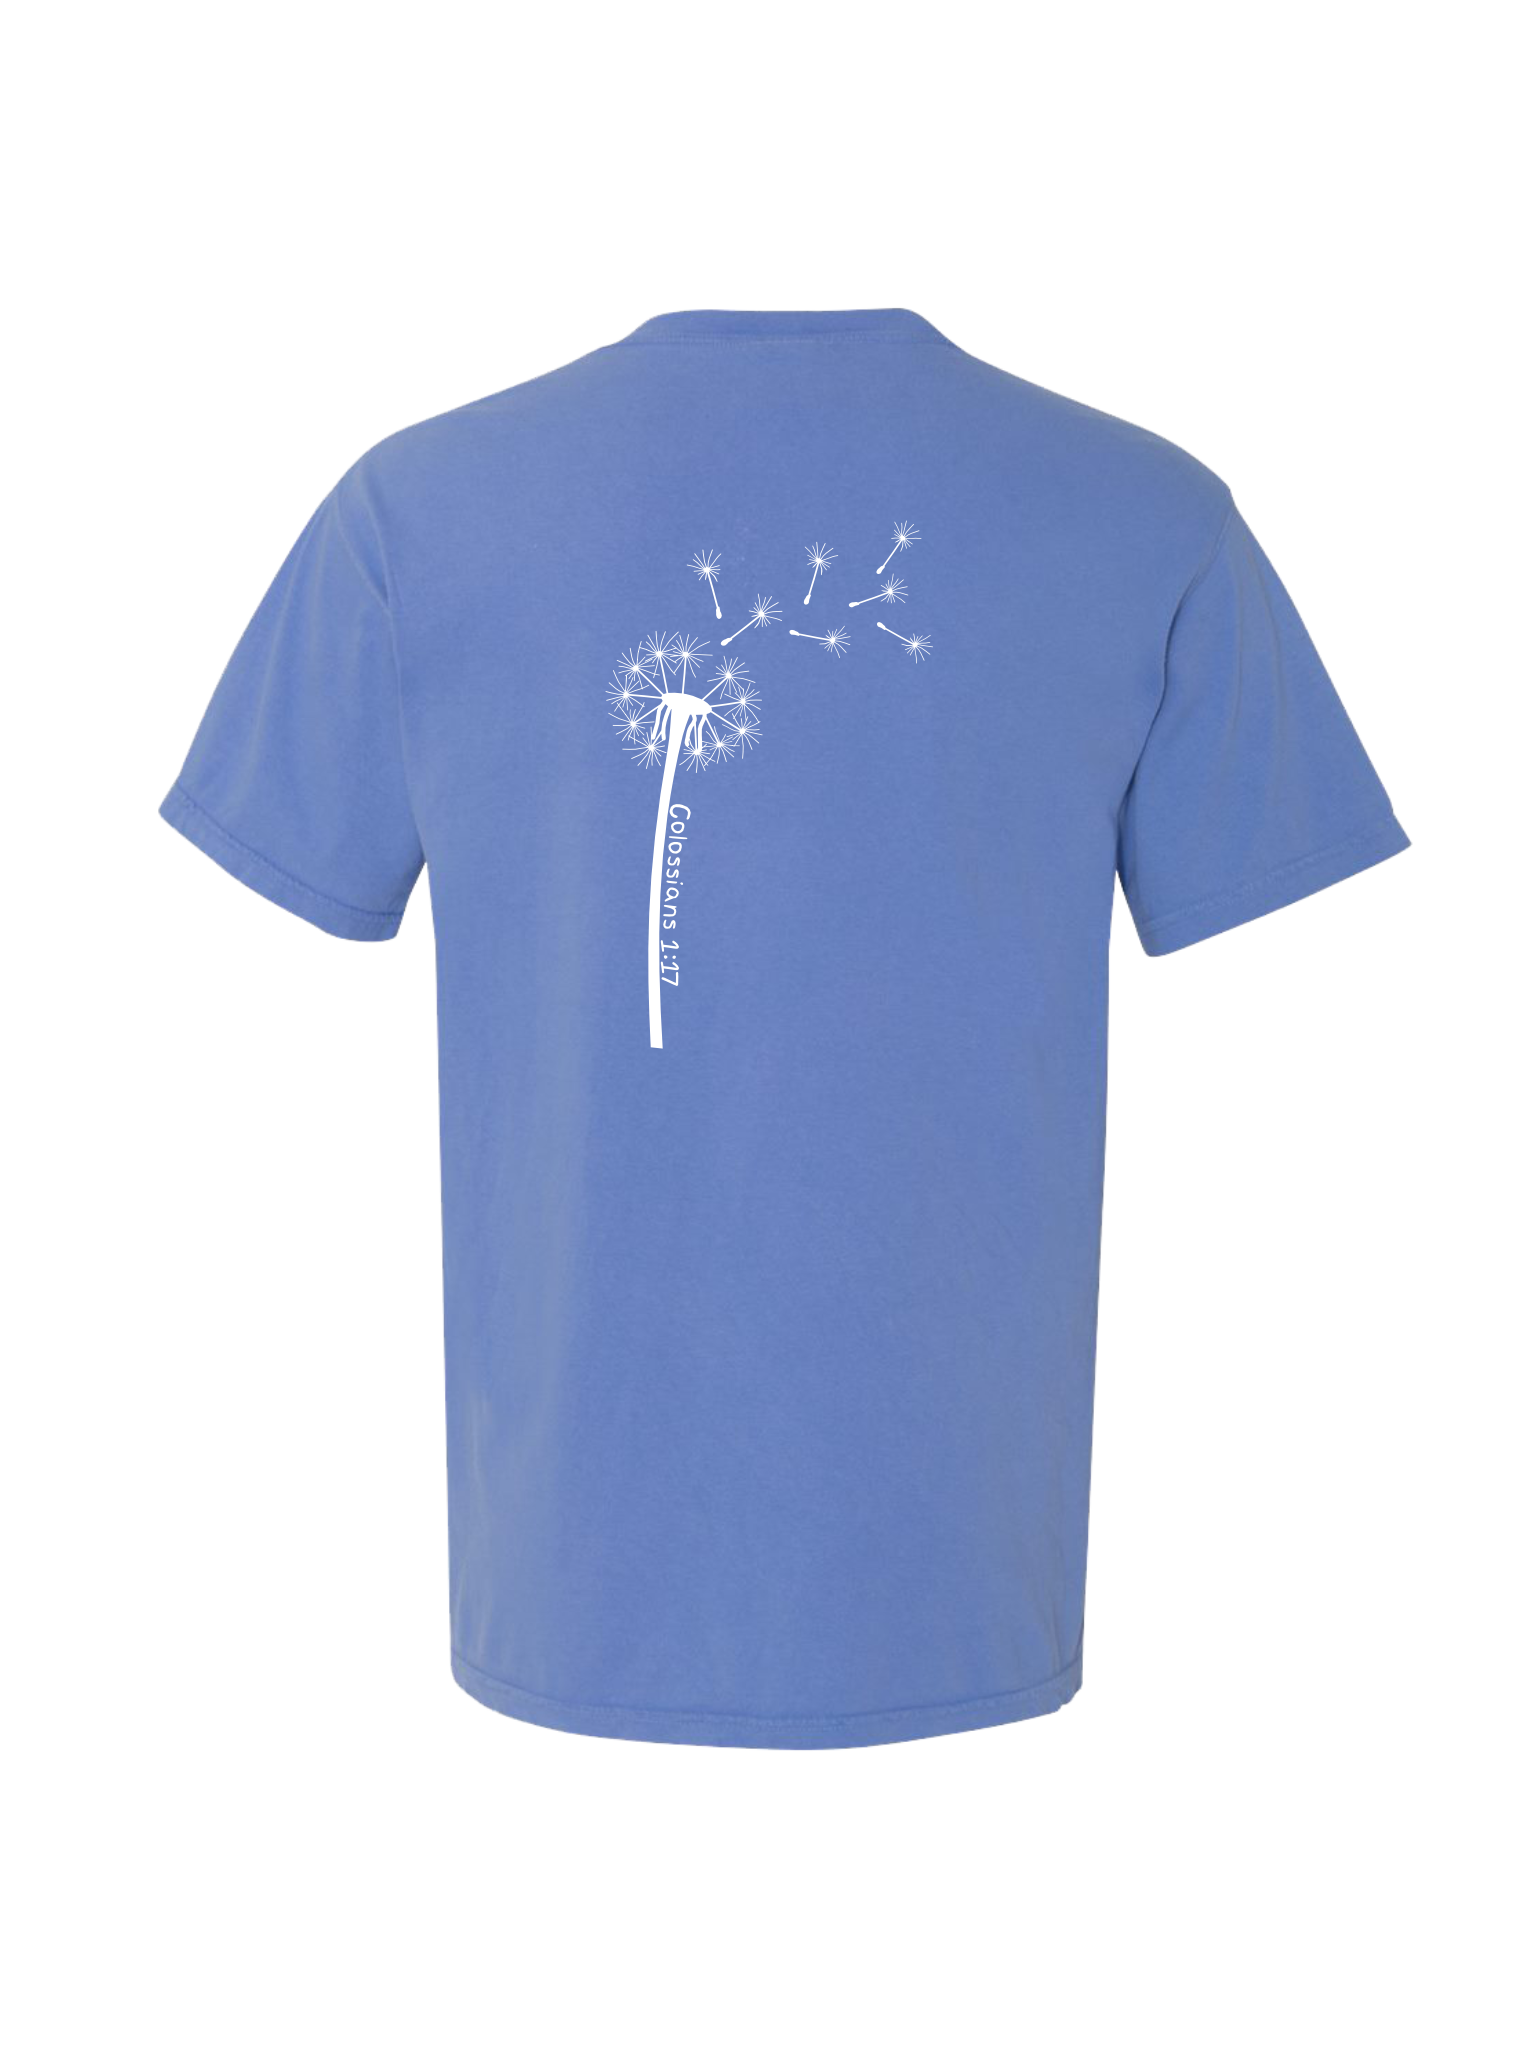 Simple Dandelion T-shirt Designs Bundle